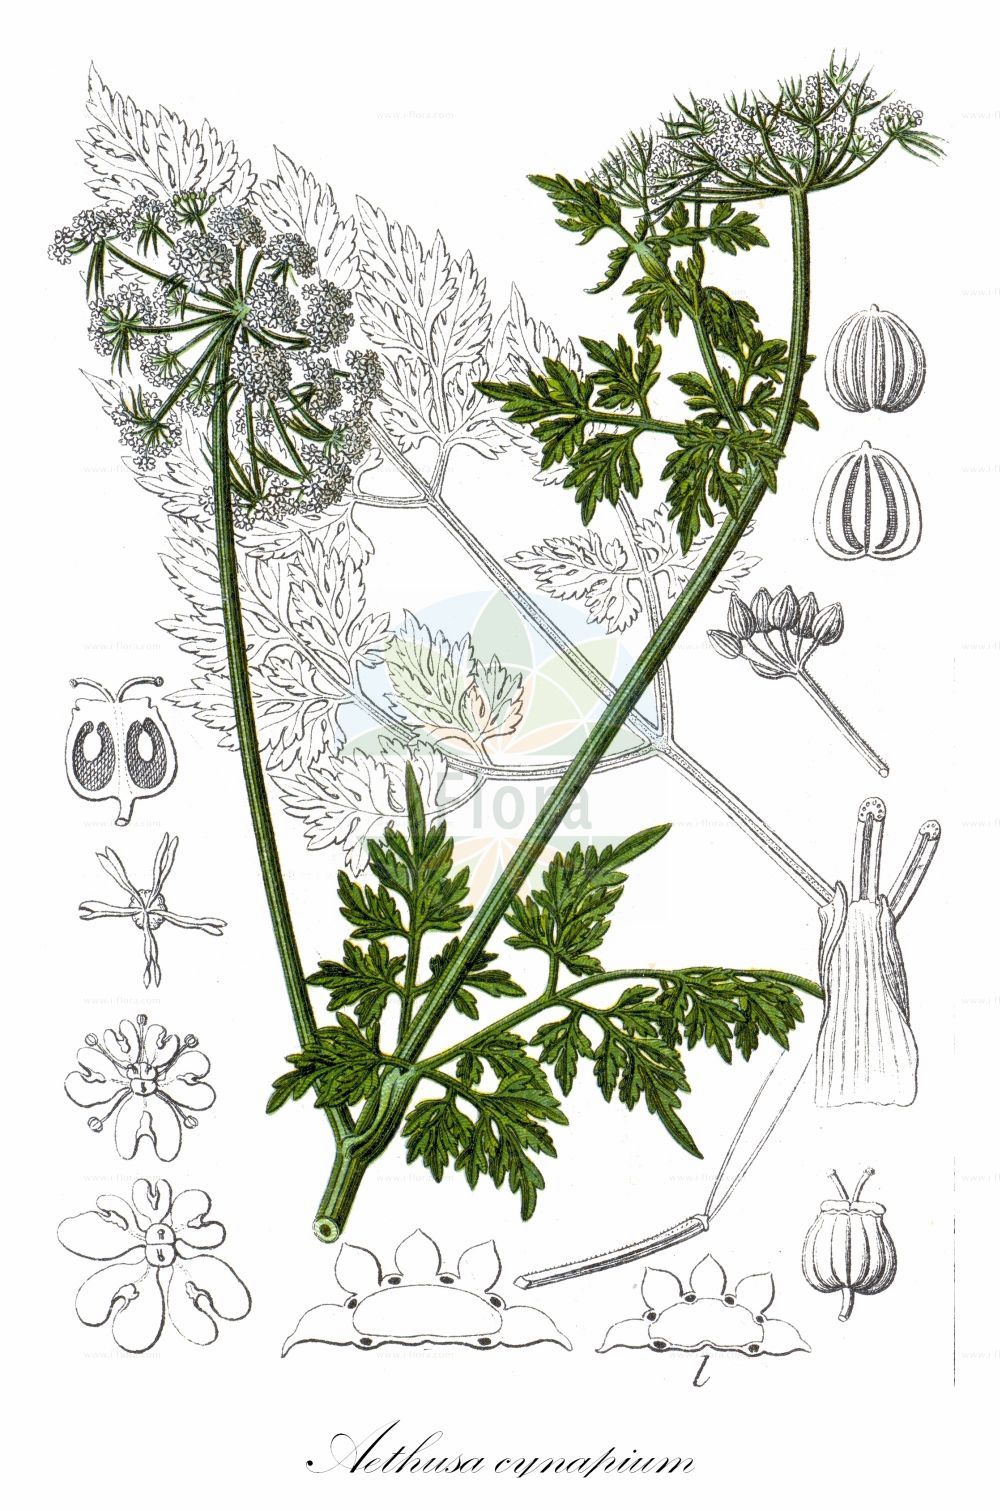 Historische Abbildung von Aethusa cynapium (Acker-Hundspetersilie - Fool's Parsley). Das Bild zeigt Blatt, Bluete, Frucht und Same. ---- Historical Drawing of Aethusa cynapium (Acker-Hundspetersilie - Fool's Parsley). The image is showing leaf, flower, fruit and seed.(Aethusa cynapium,Acker-Hundspetersilie,Fool's Parsley,Aethusa cynapium,Acker-Hundspetersilie,Hundspetersilie,Fool's Parsley,Dog Poison,Aethusa,Hundspetersilie,Fool's Parsley,Apiaceae,Doldengewächse,Carrot family,Blatt,Bluete,Frucht,Same,leaf,flower,fruit,seed,Sturm (1796f))